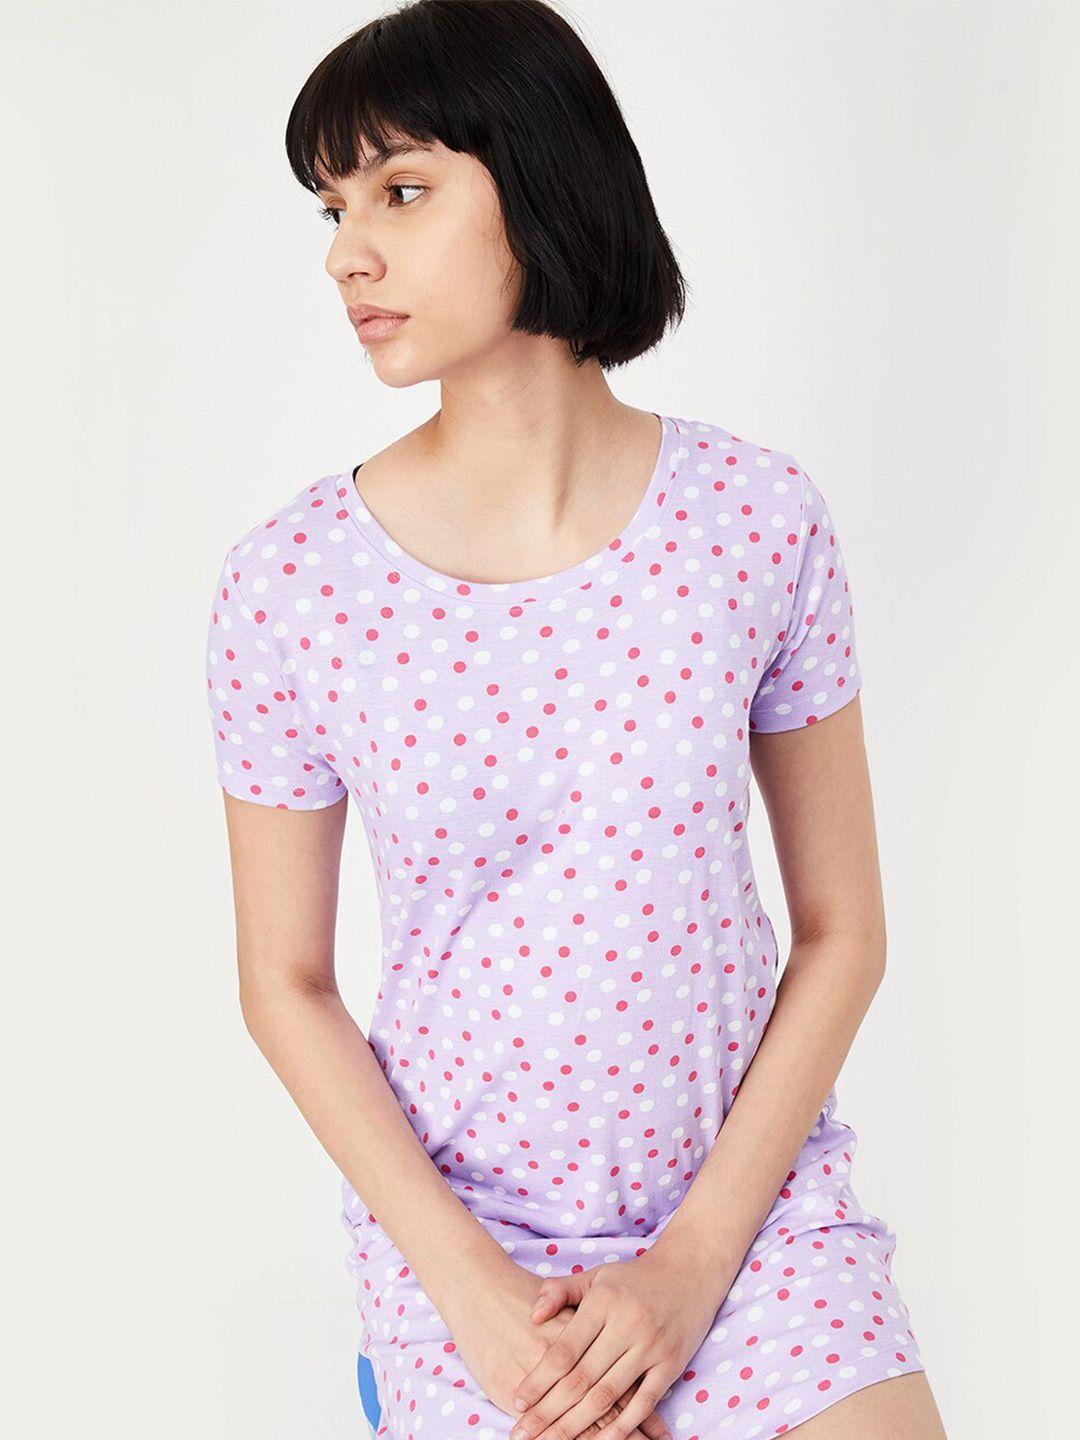 max polka dots printed pure cotton t-shirt nightdress